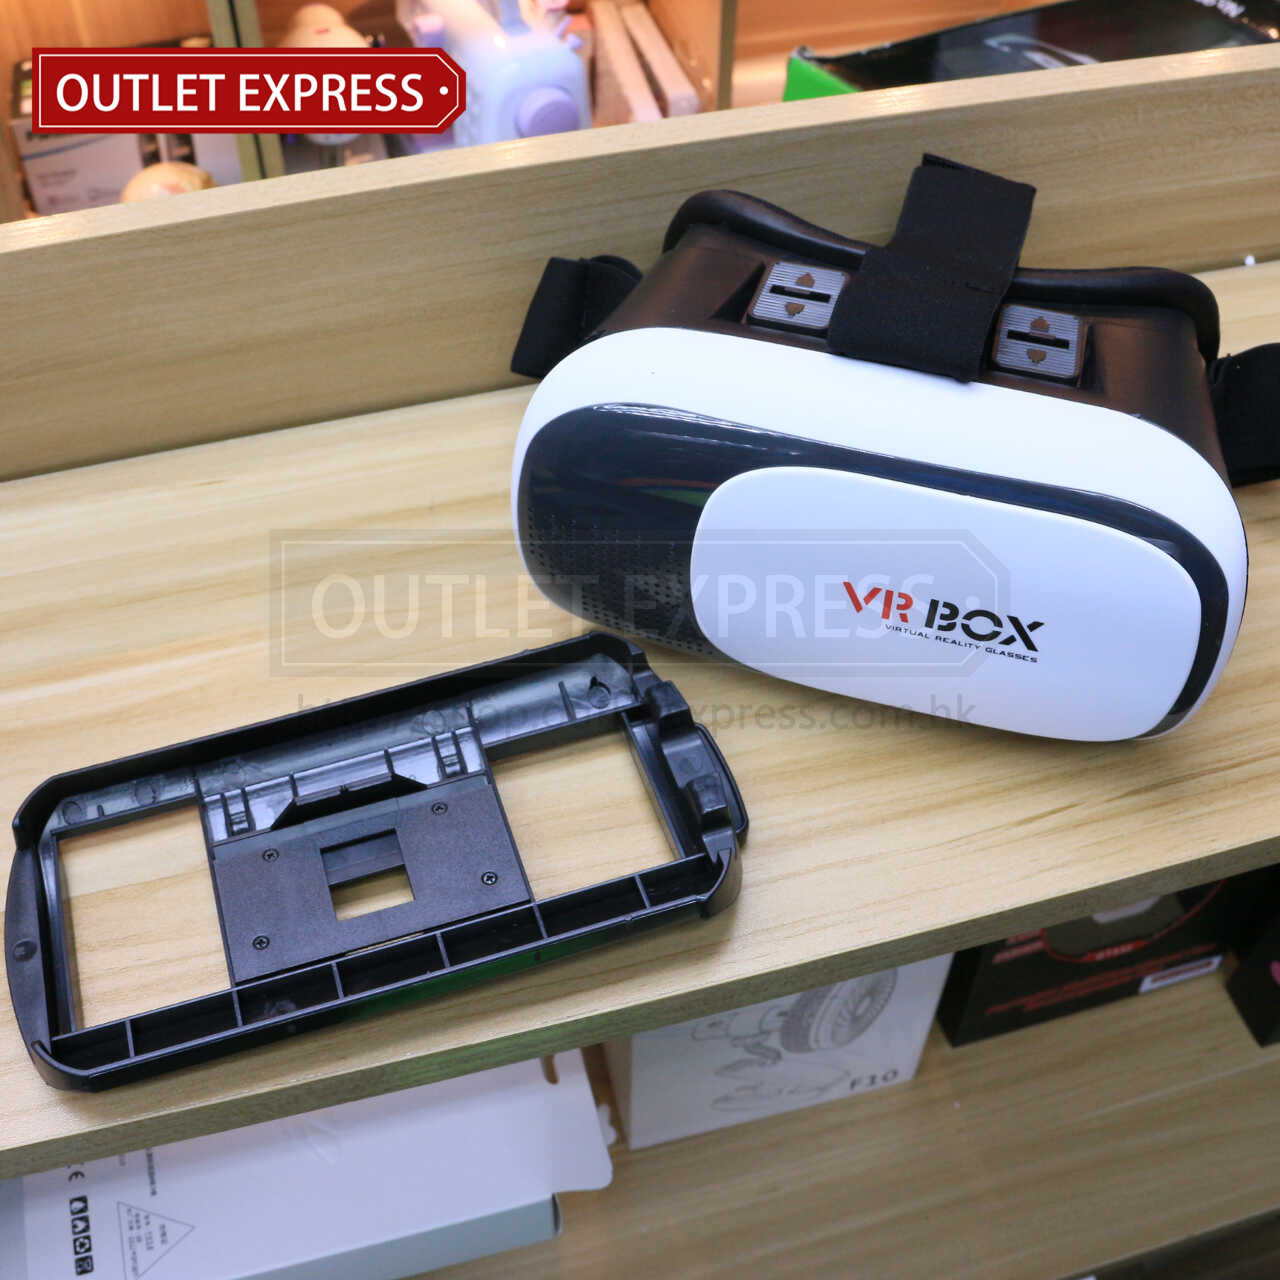 2代 VR BOX虛擬實境眼鏡 手機放置位置 - Outlet Express HK生活百貨城實拍相片